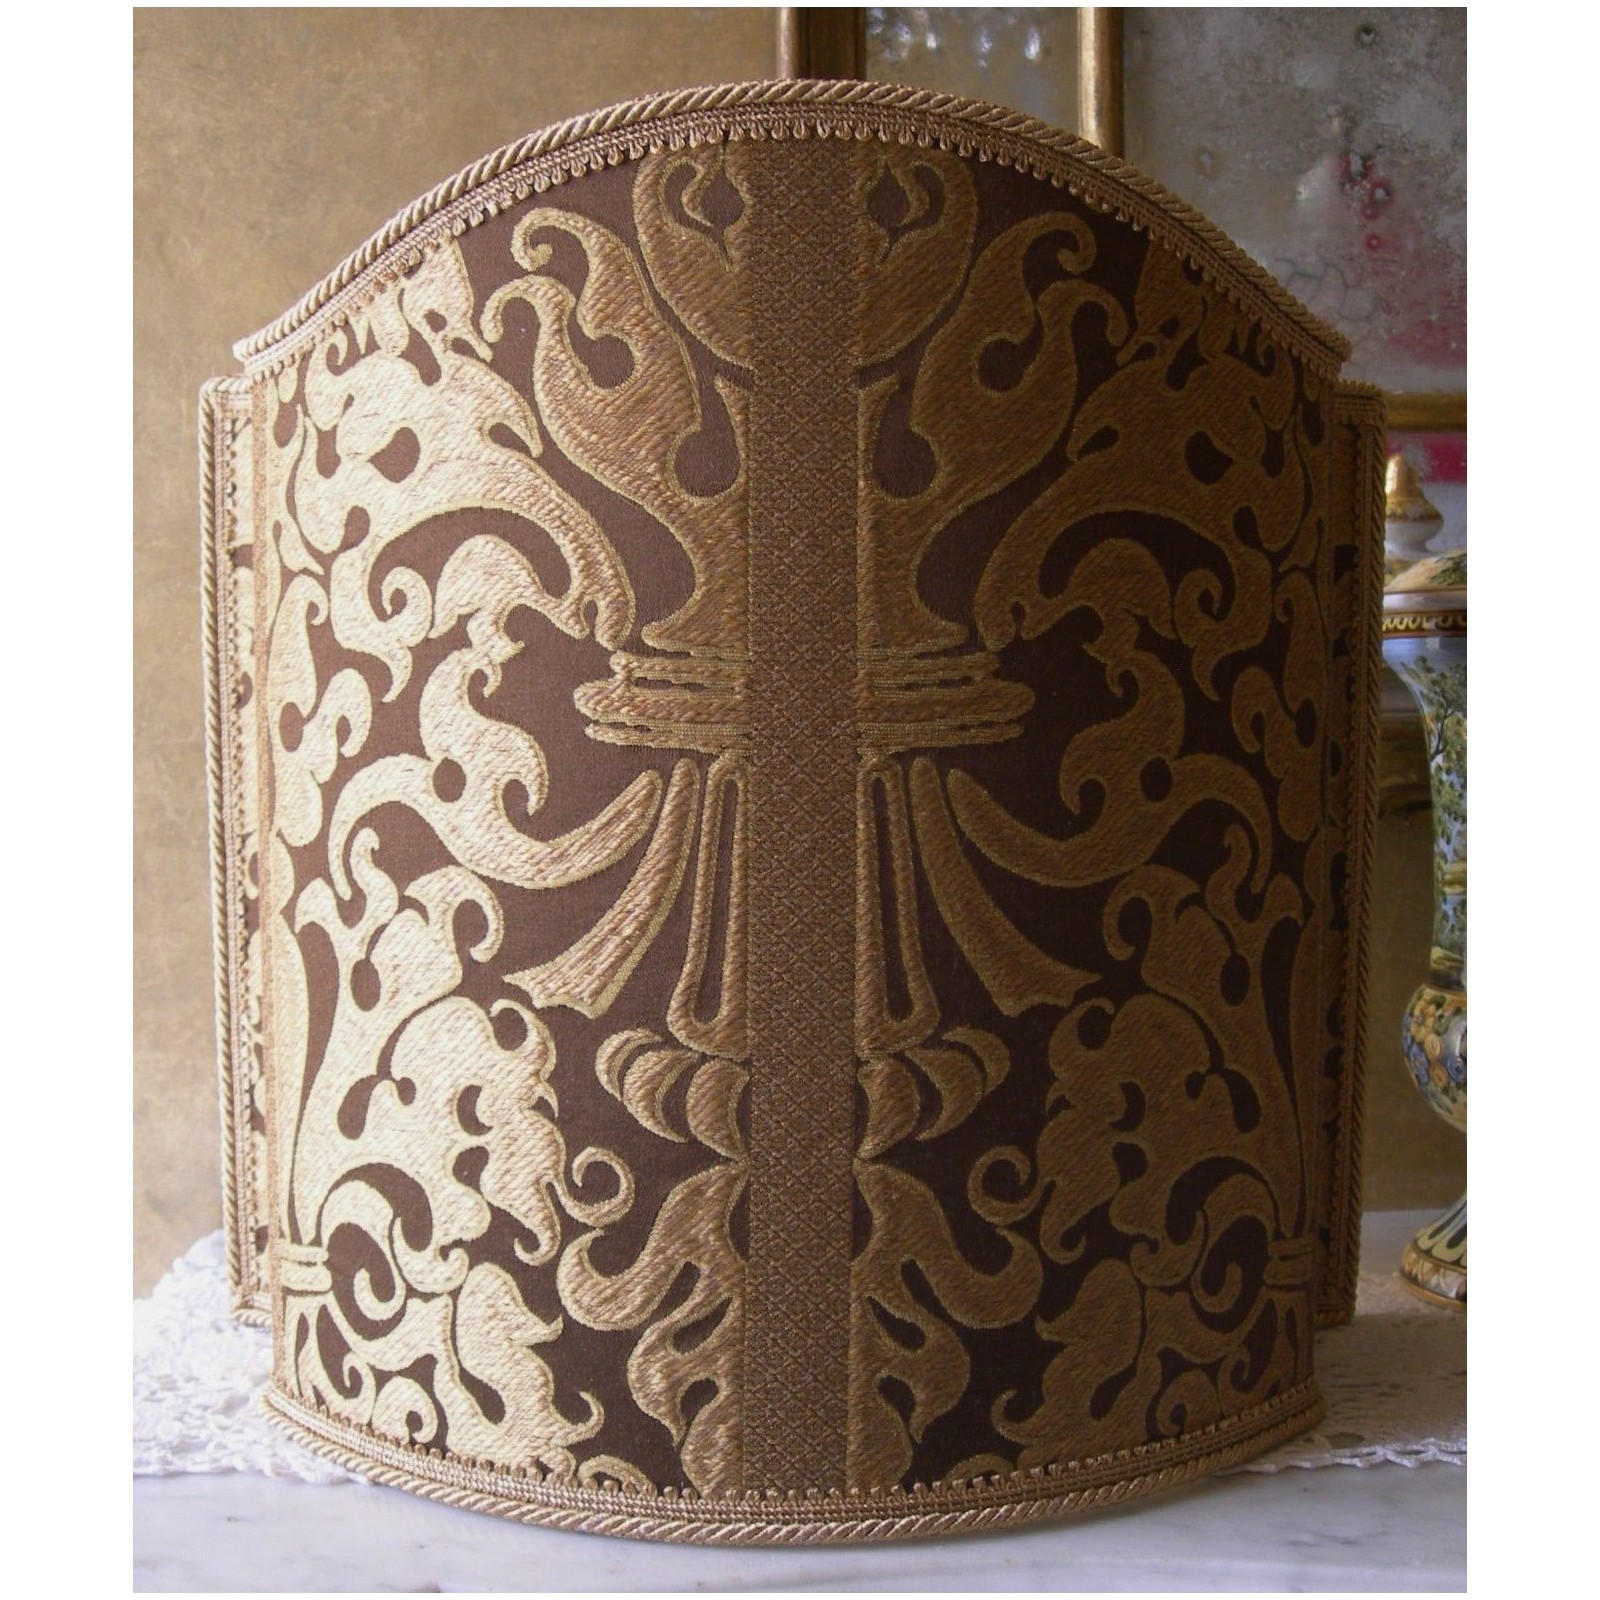 Venetian lampshade in rubelli silk lampas fabric brown and gold